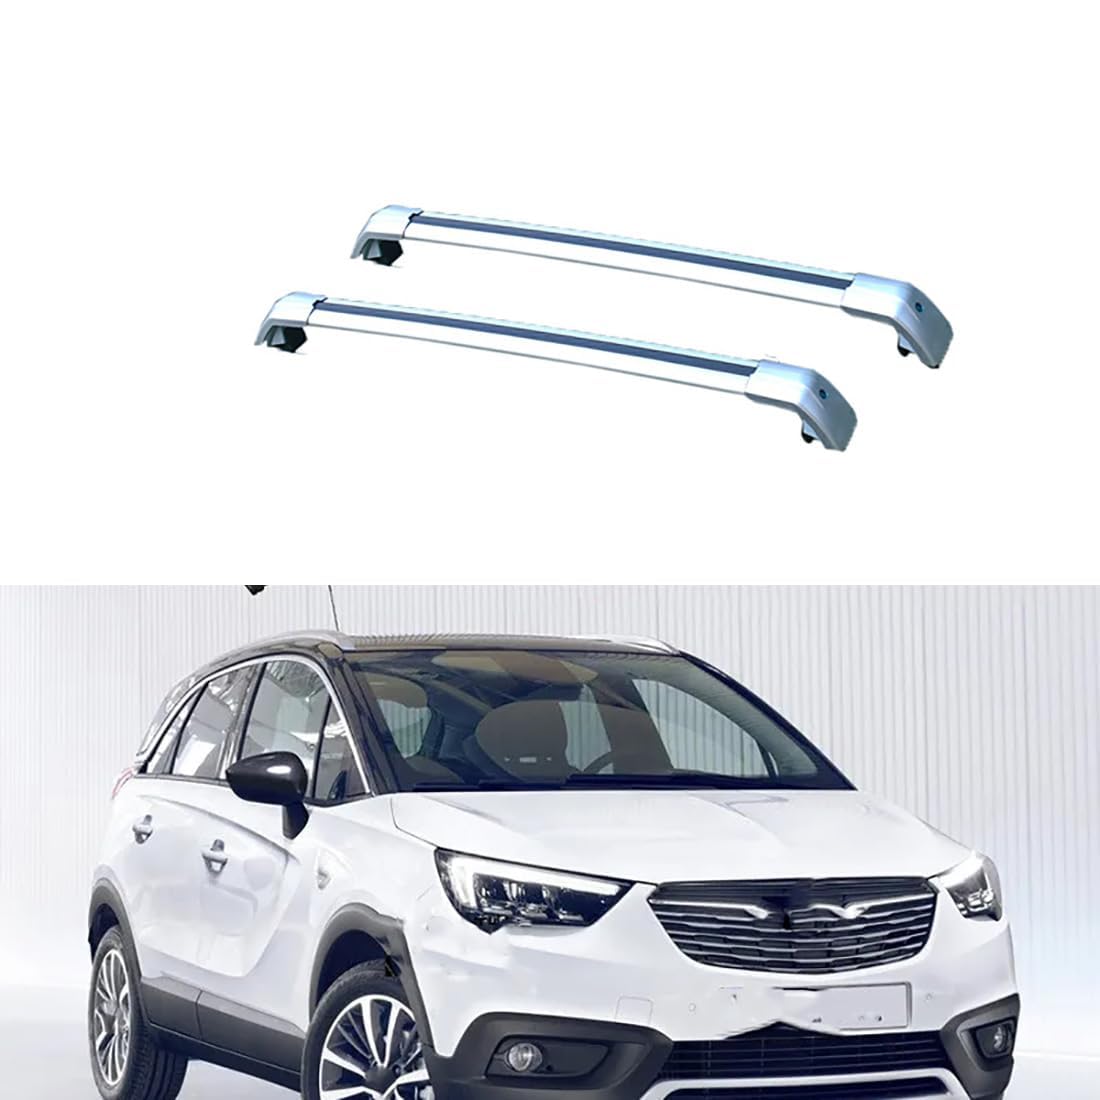 2 Stück Auto Dachträger für Opel Crossland X SUV 2017 2018 2019, Aluminium Dachgepäckträger Dachgepäckablage Querträger Relingträger, Lastenträger GepäCktransport Zubehör,B-Silver von ZDJBFA